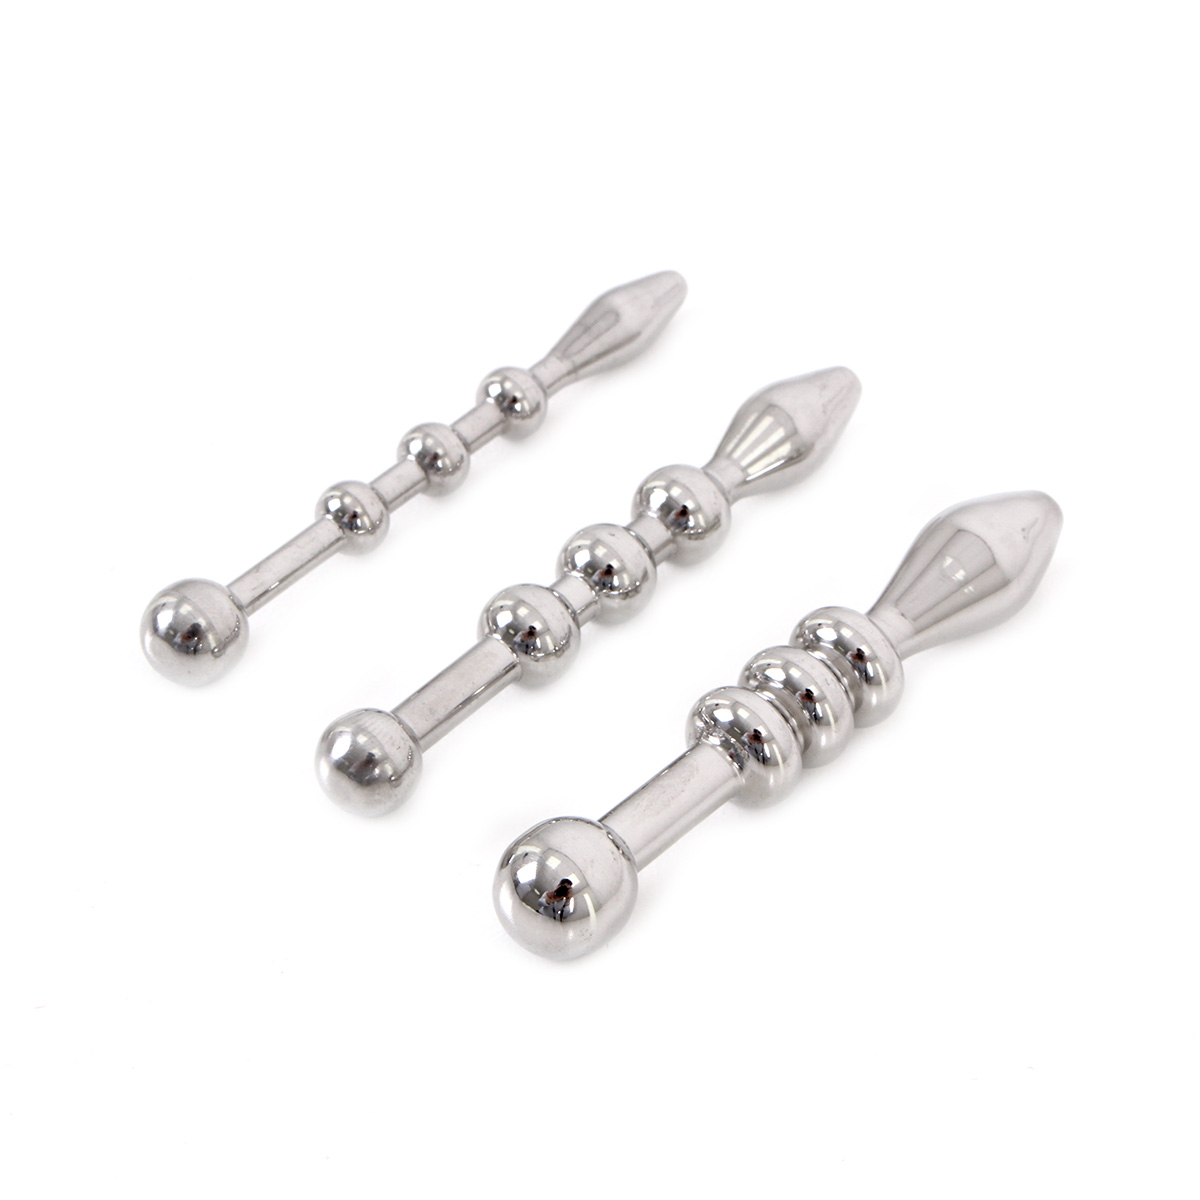 Urethral Trainer Kit 3 Solid Beads Penisplugs